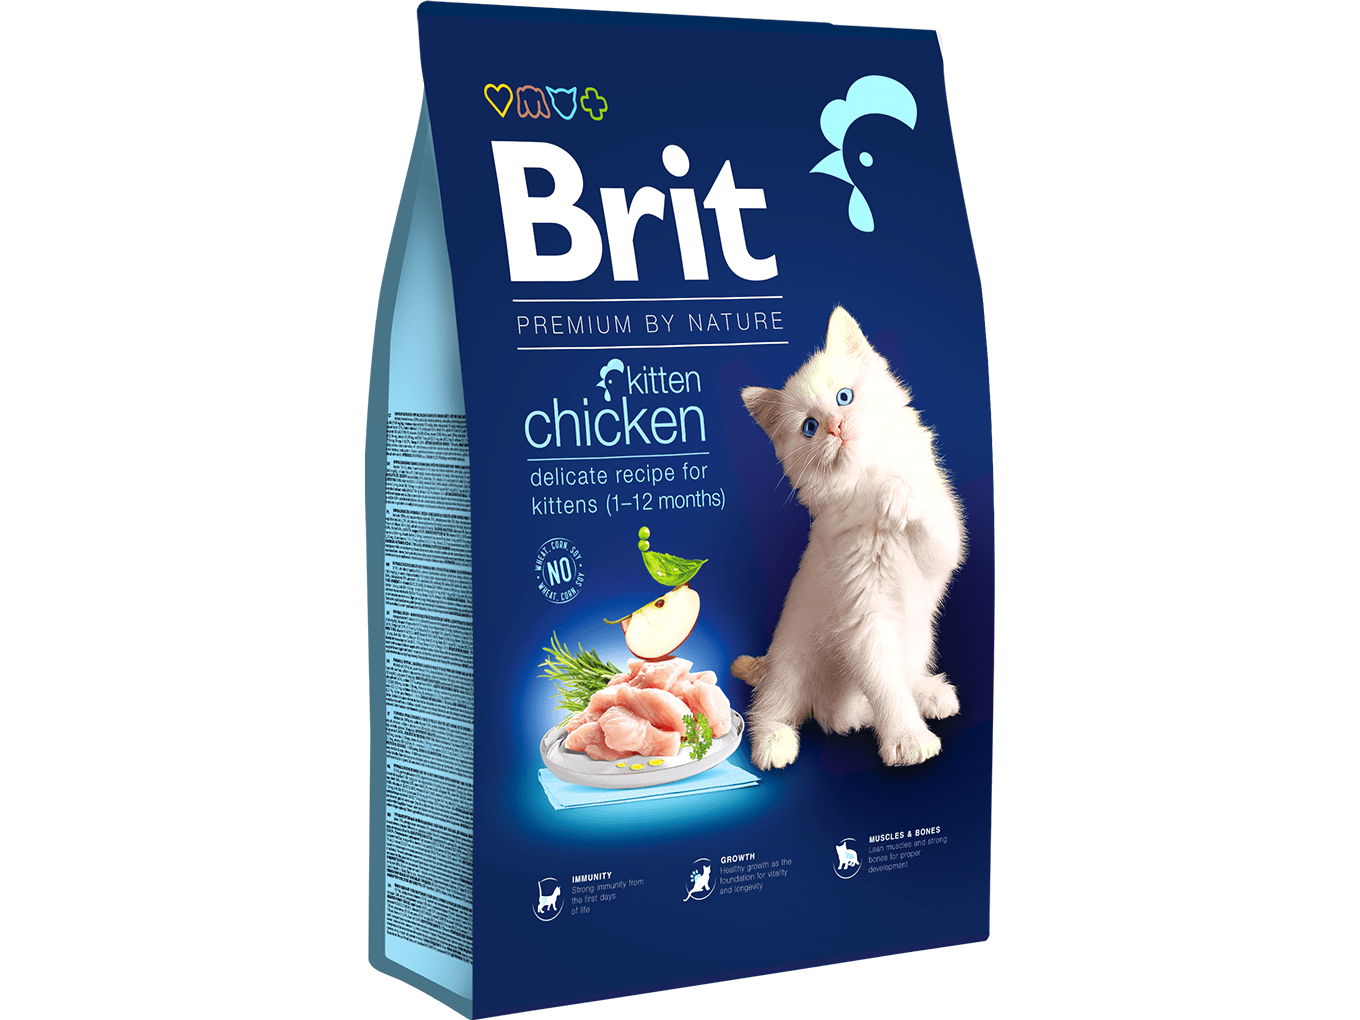 Brit Premium by Nature Cat. Kitten Chicken, 1,5kg